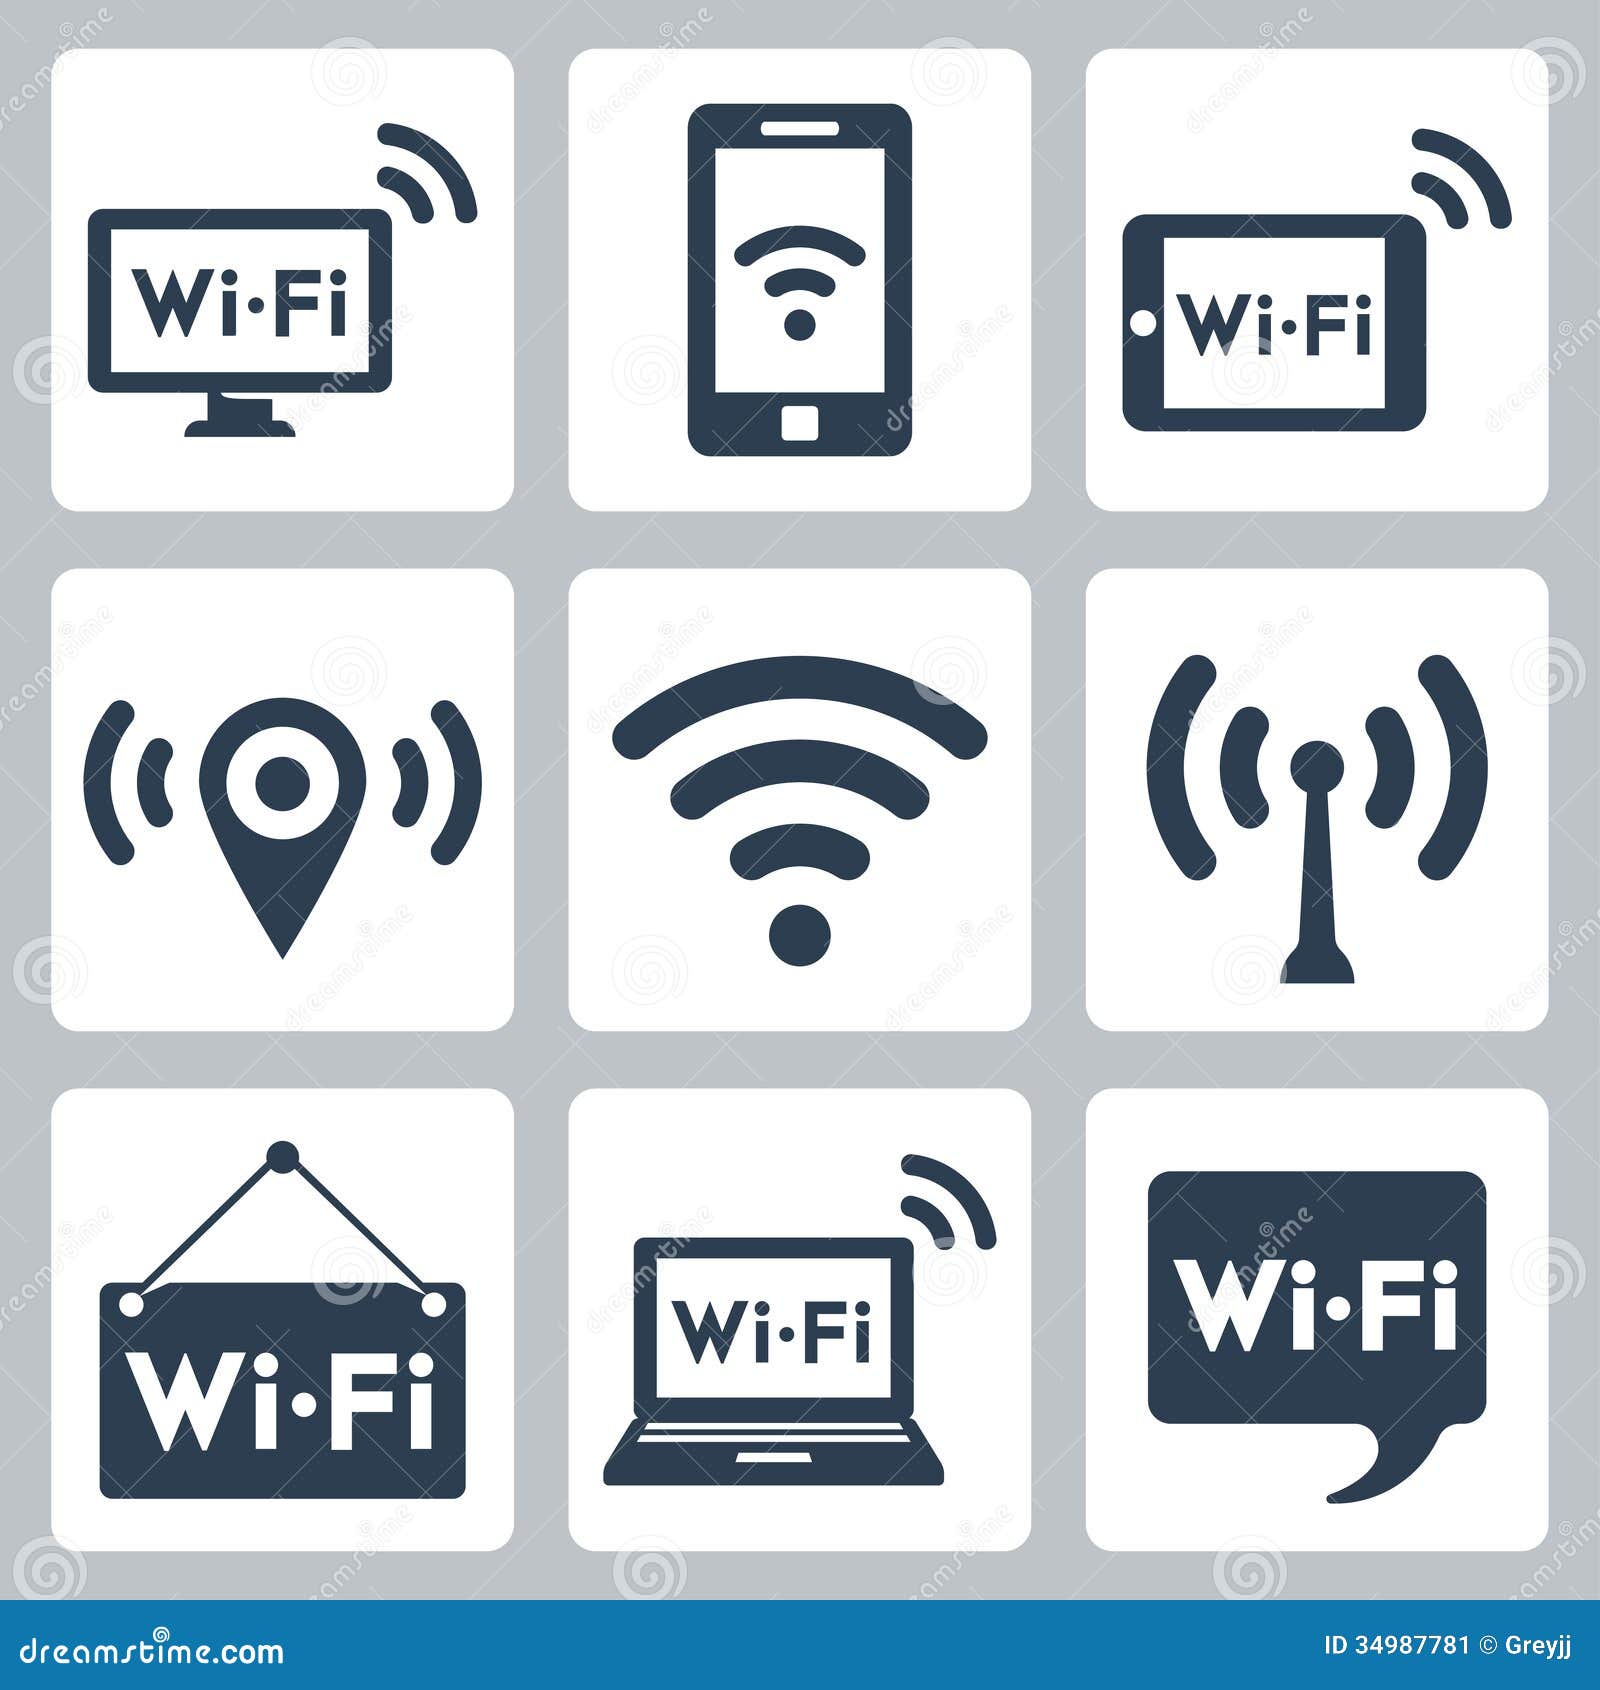  wifi icons set